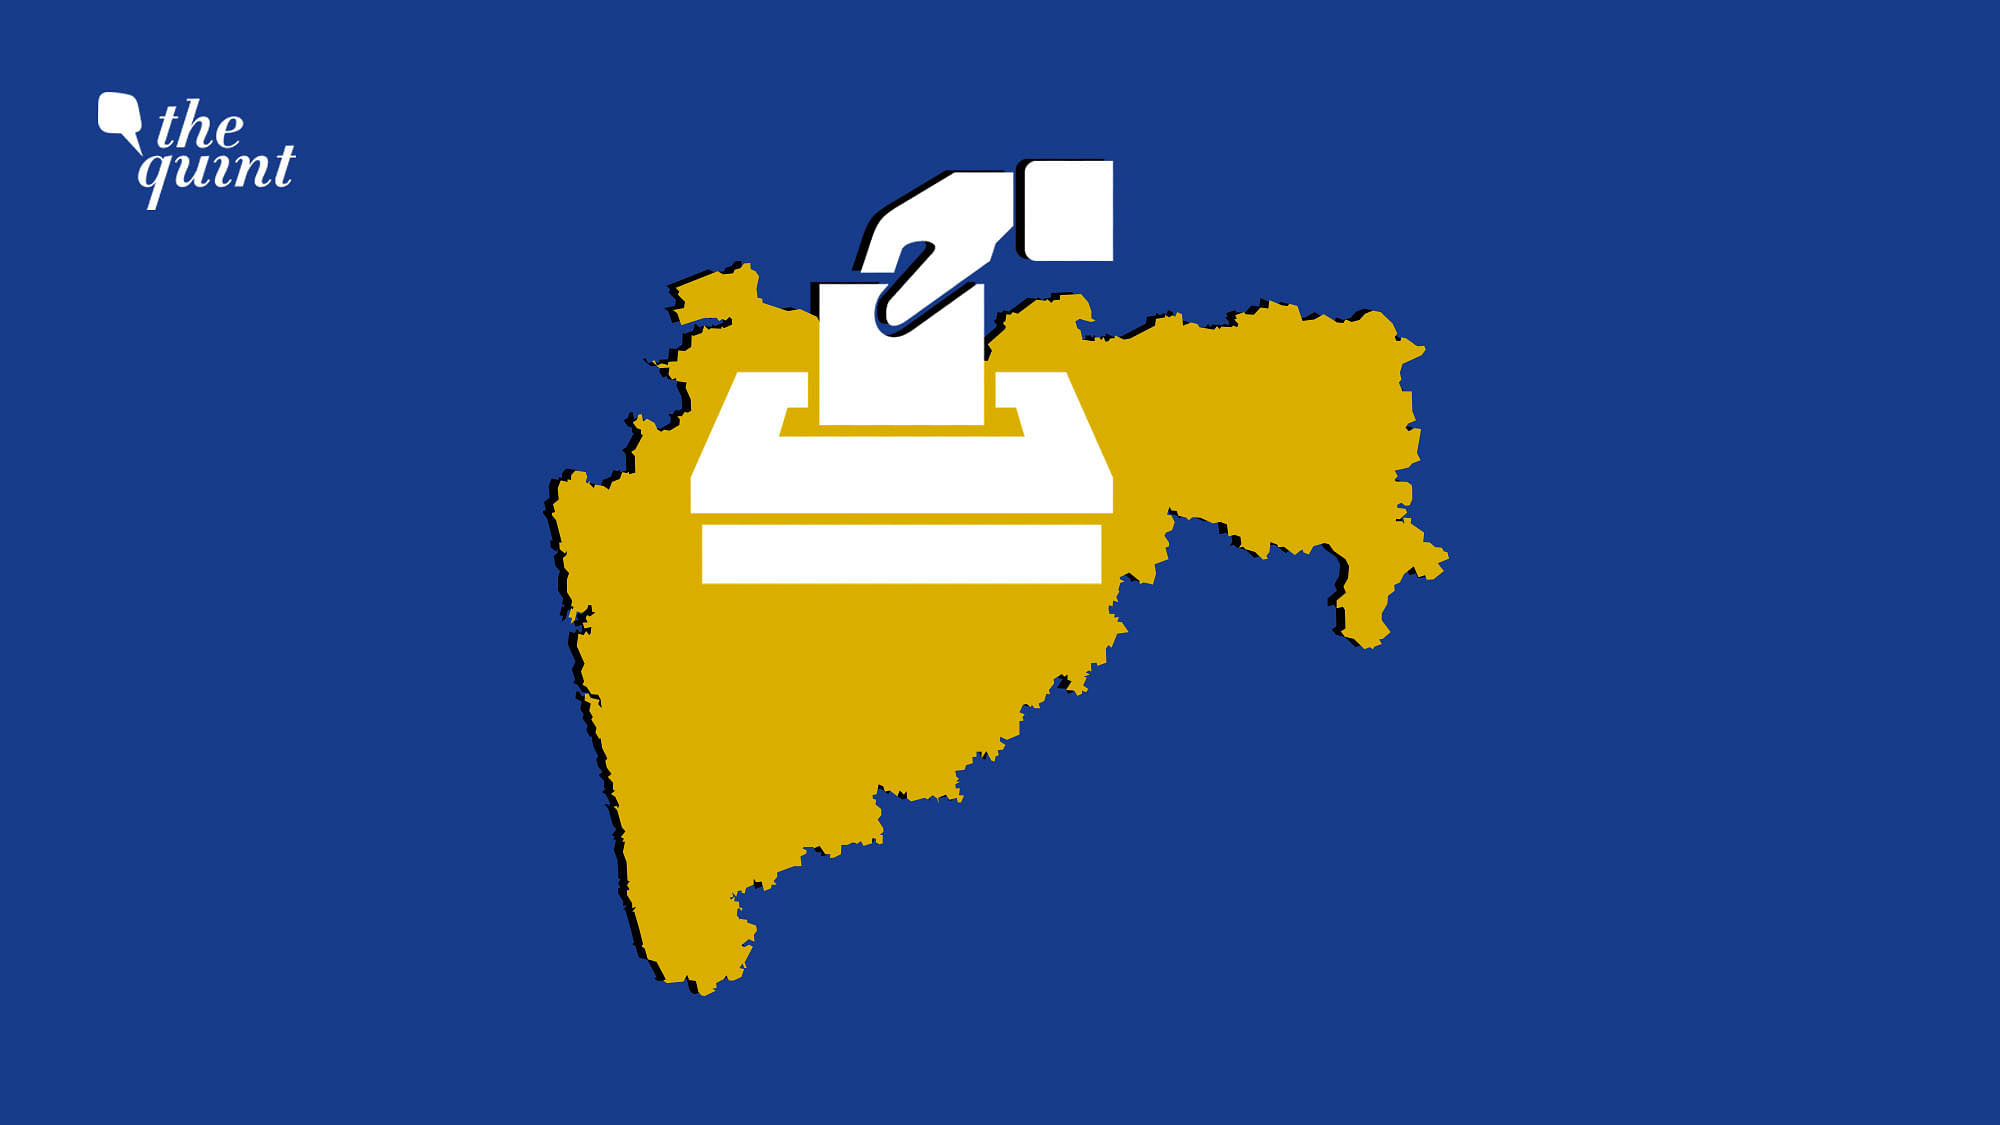 The ABP-CVoter survey tips the BJP-Shiv Sena alliance to win Maharashtra Assembly elections.